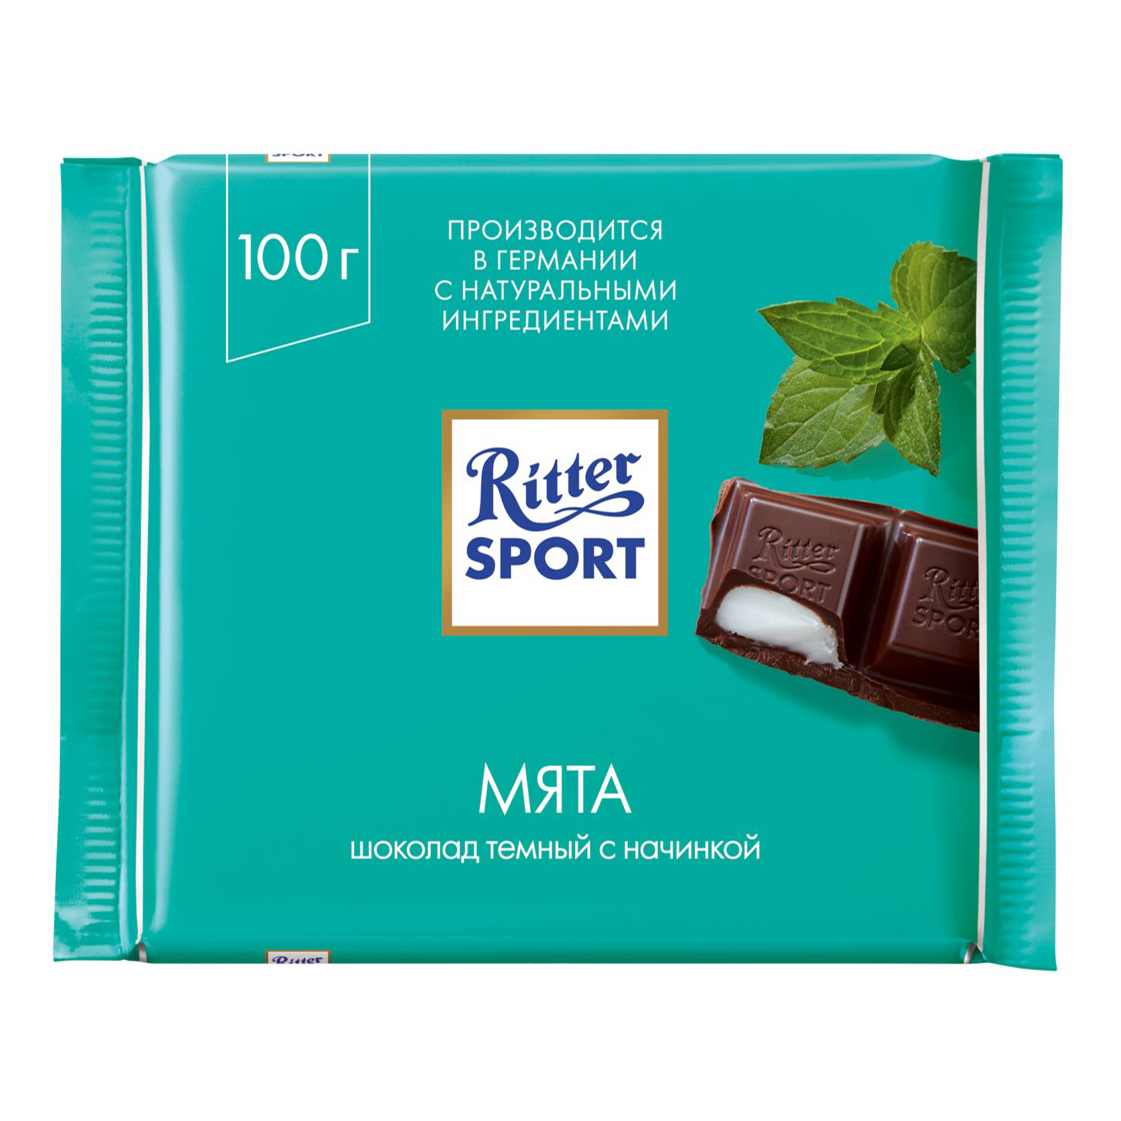 Купить шоколад темный Ritter Sport с начинкой мята 100 г, цены на Мегамаркет | Артикул: 100023331809